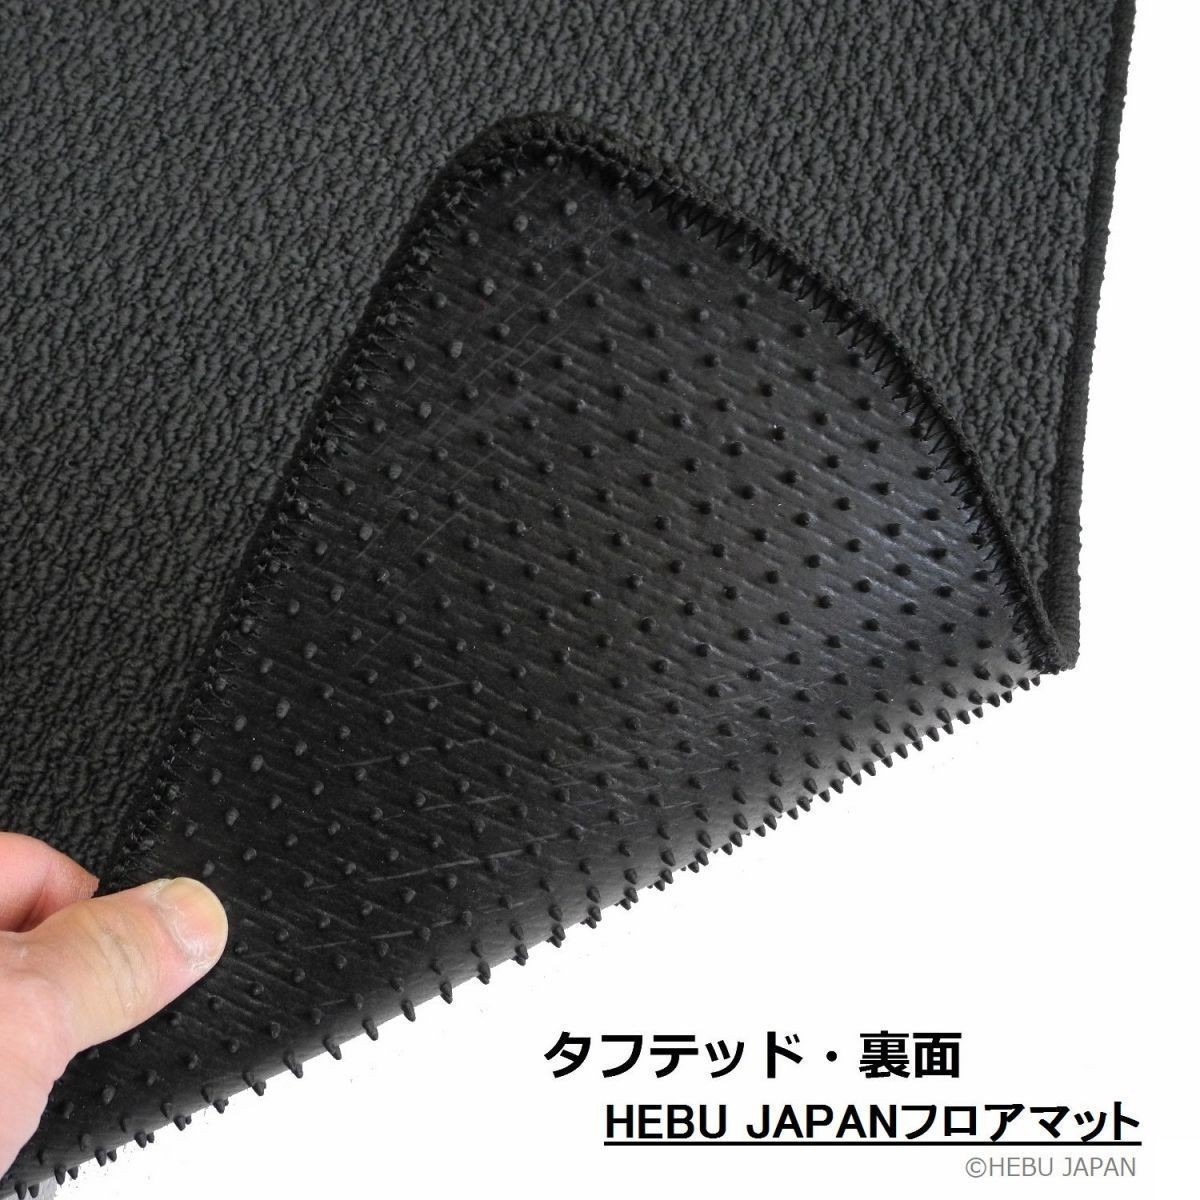  включая доставку HEBU JAPAN Passat RHD коврик на пол свет черный 